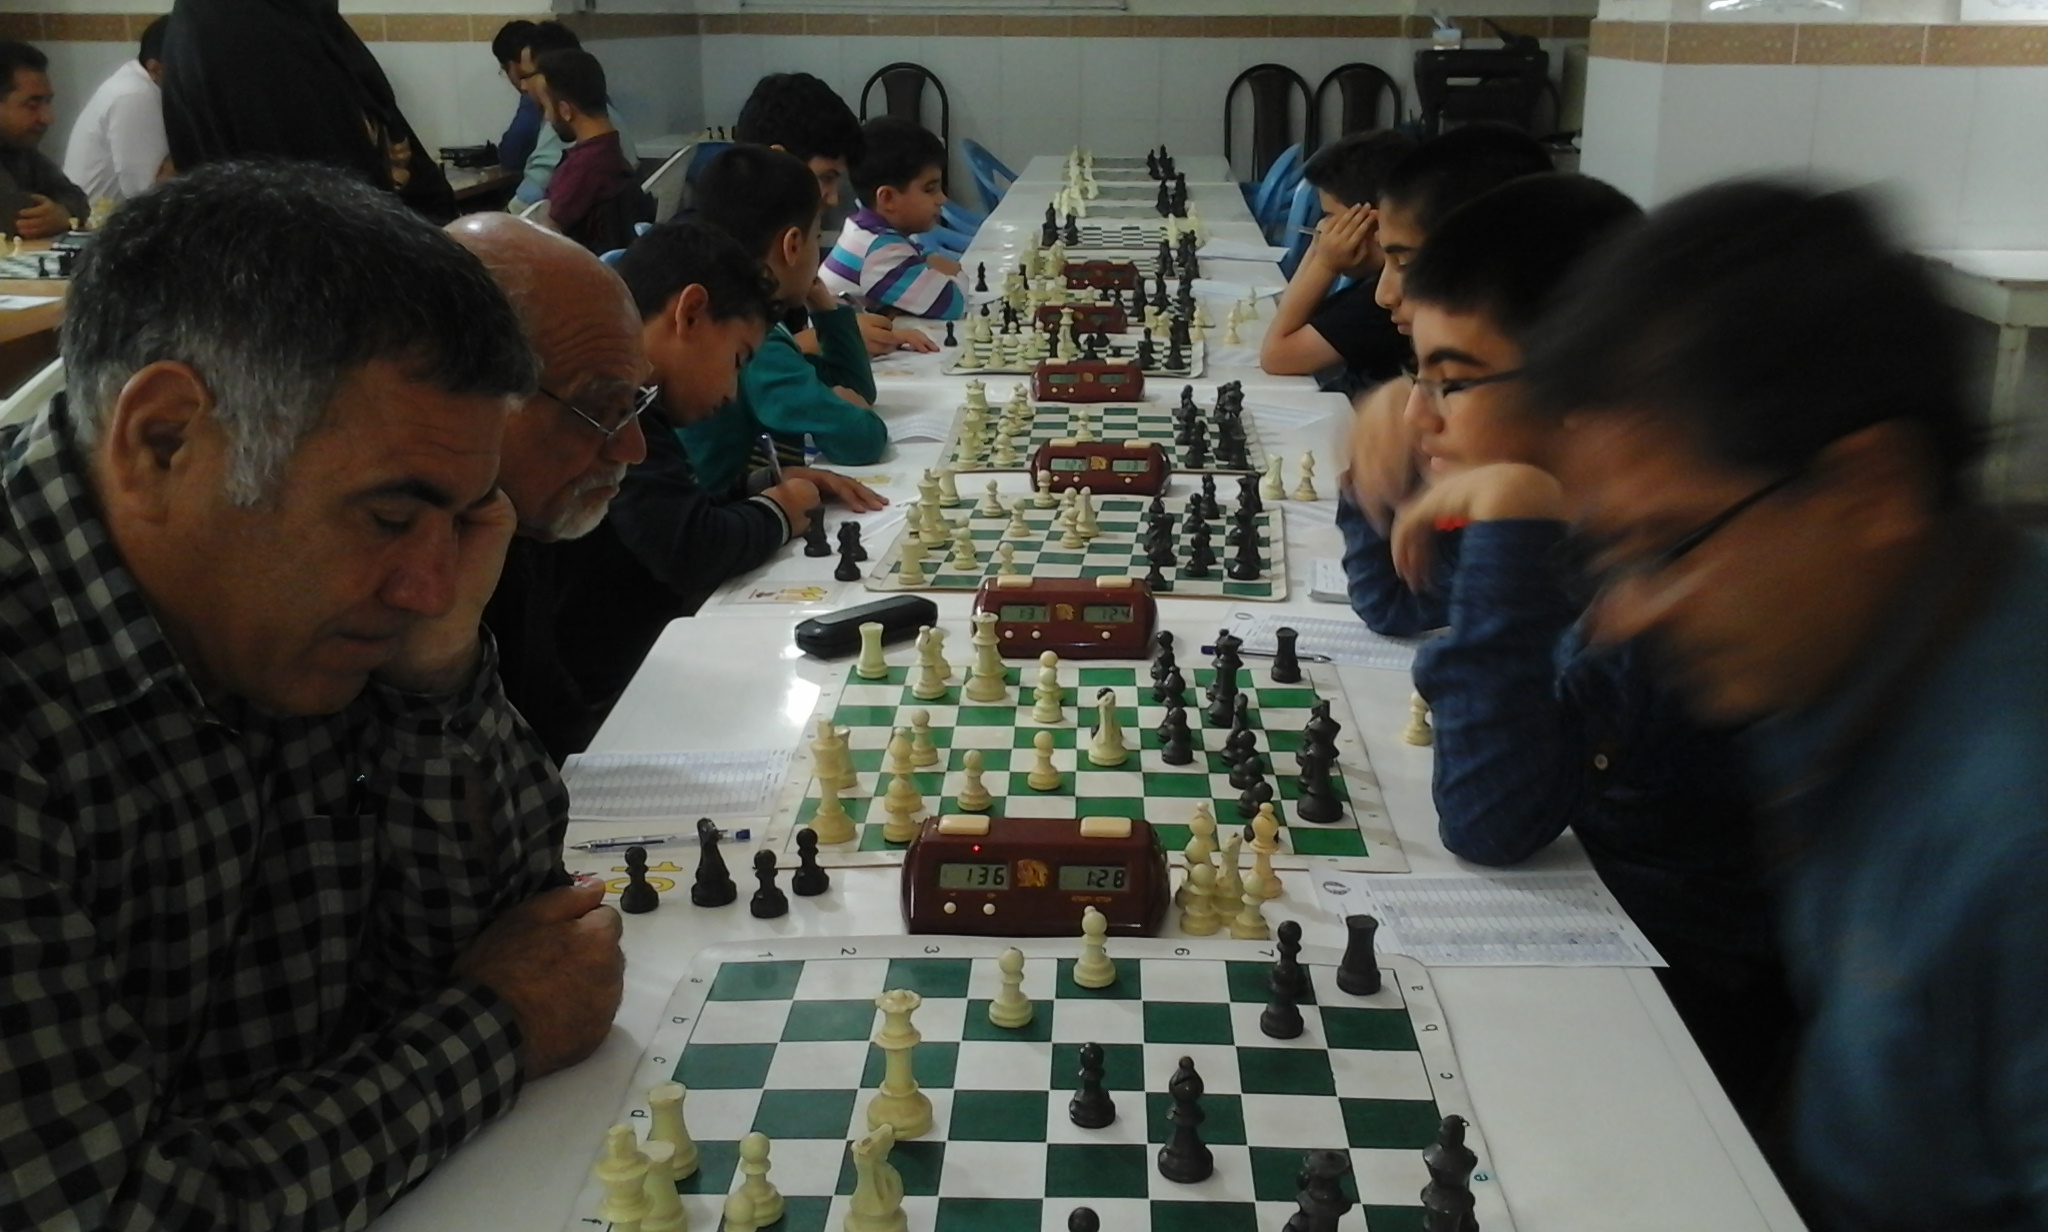 پایان مسابقات شطرنج (جام نوروز)شهرستان کازرون